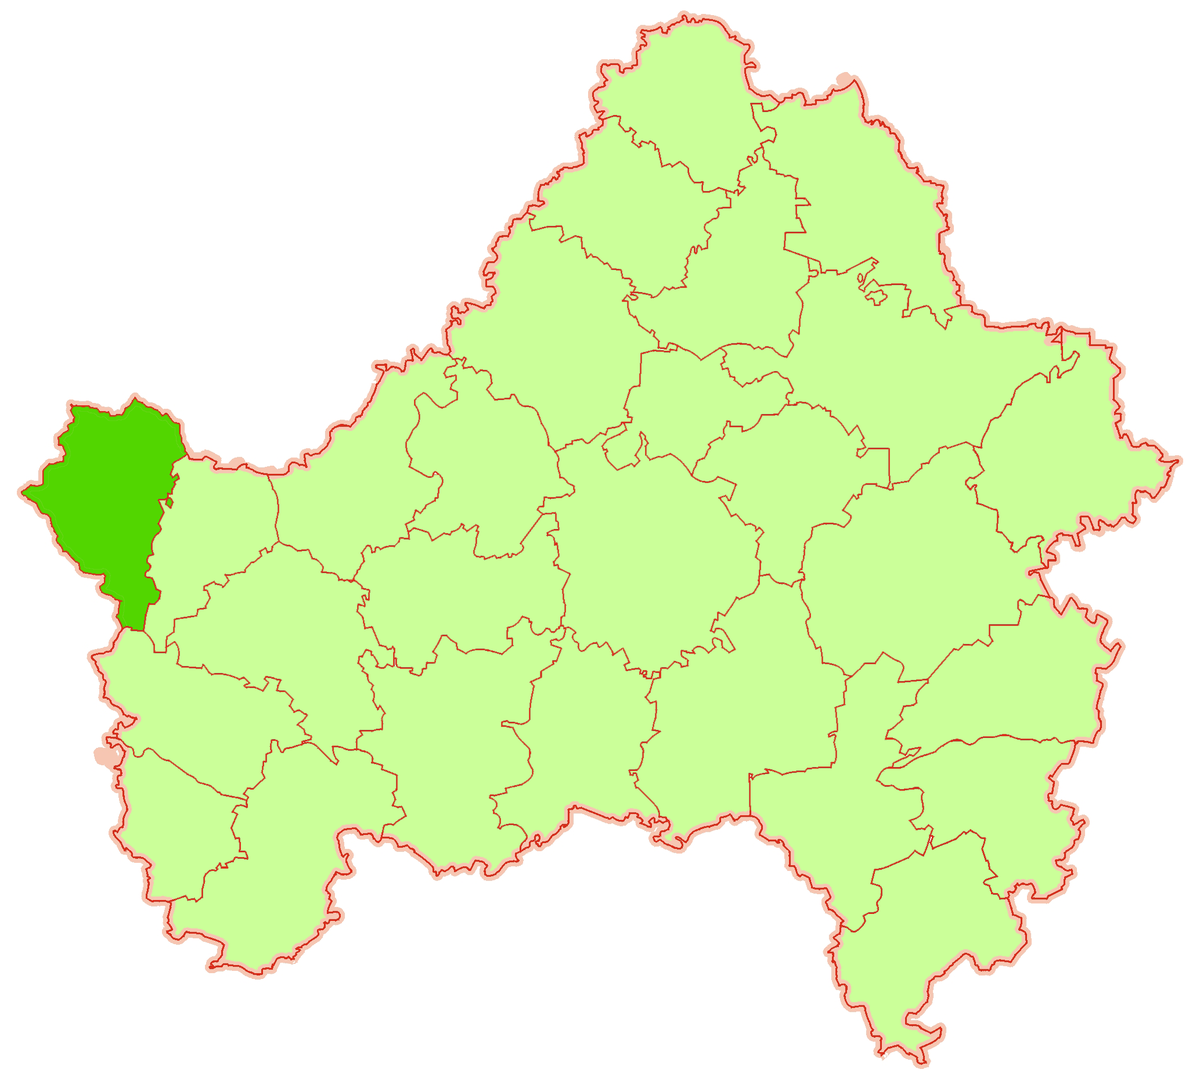 Карачинский район брянской области на карте